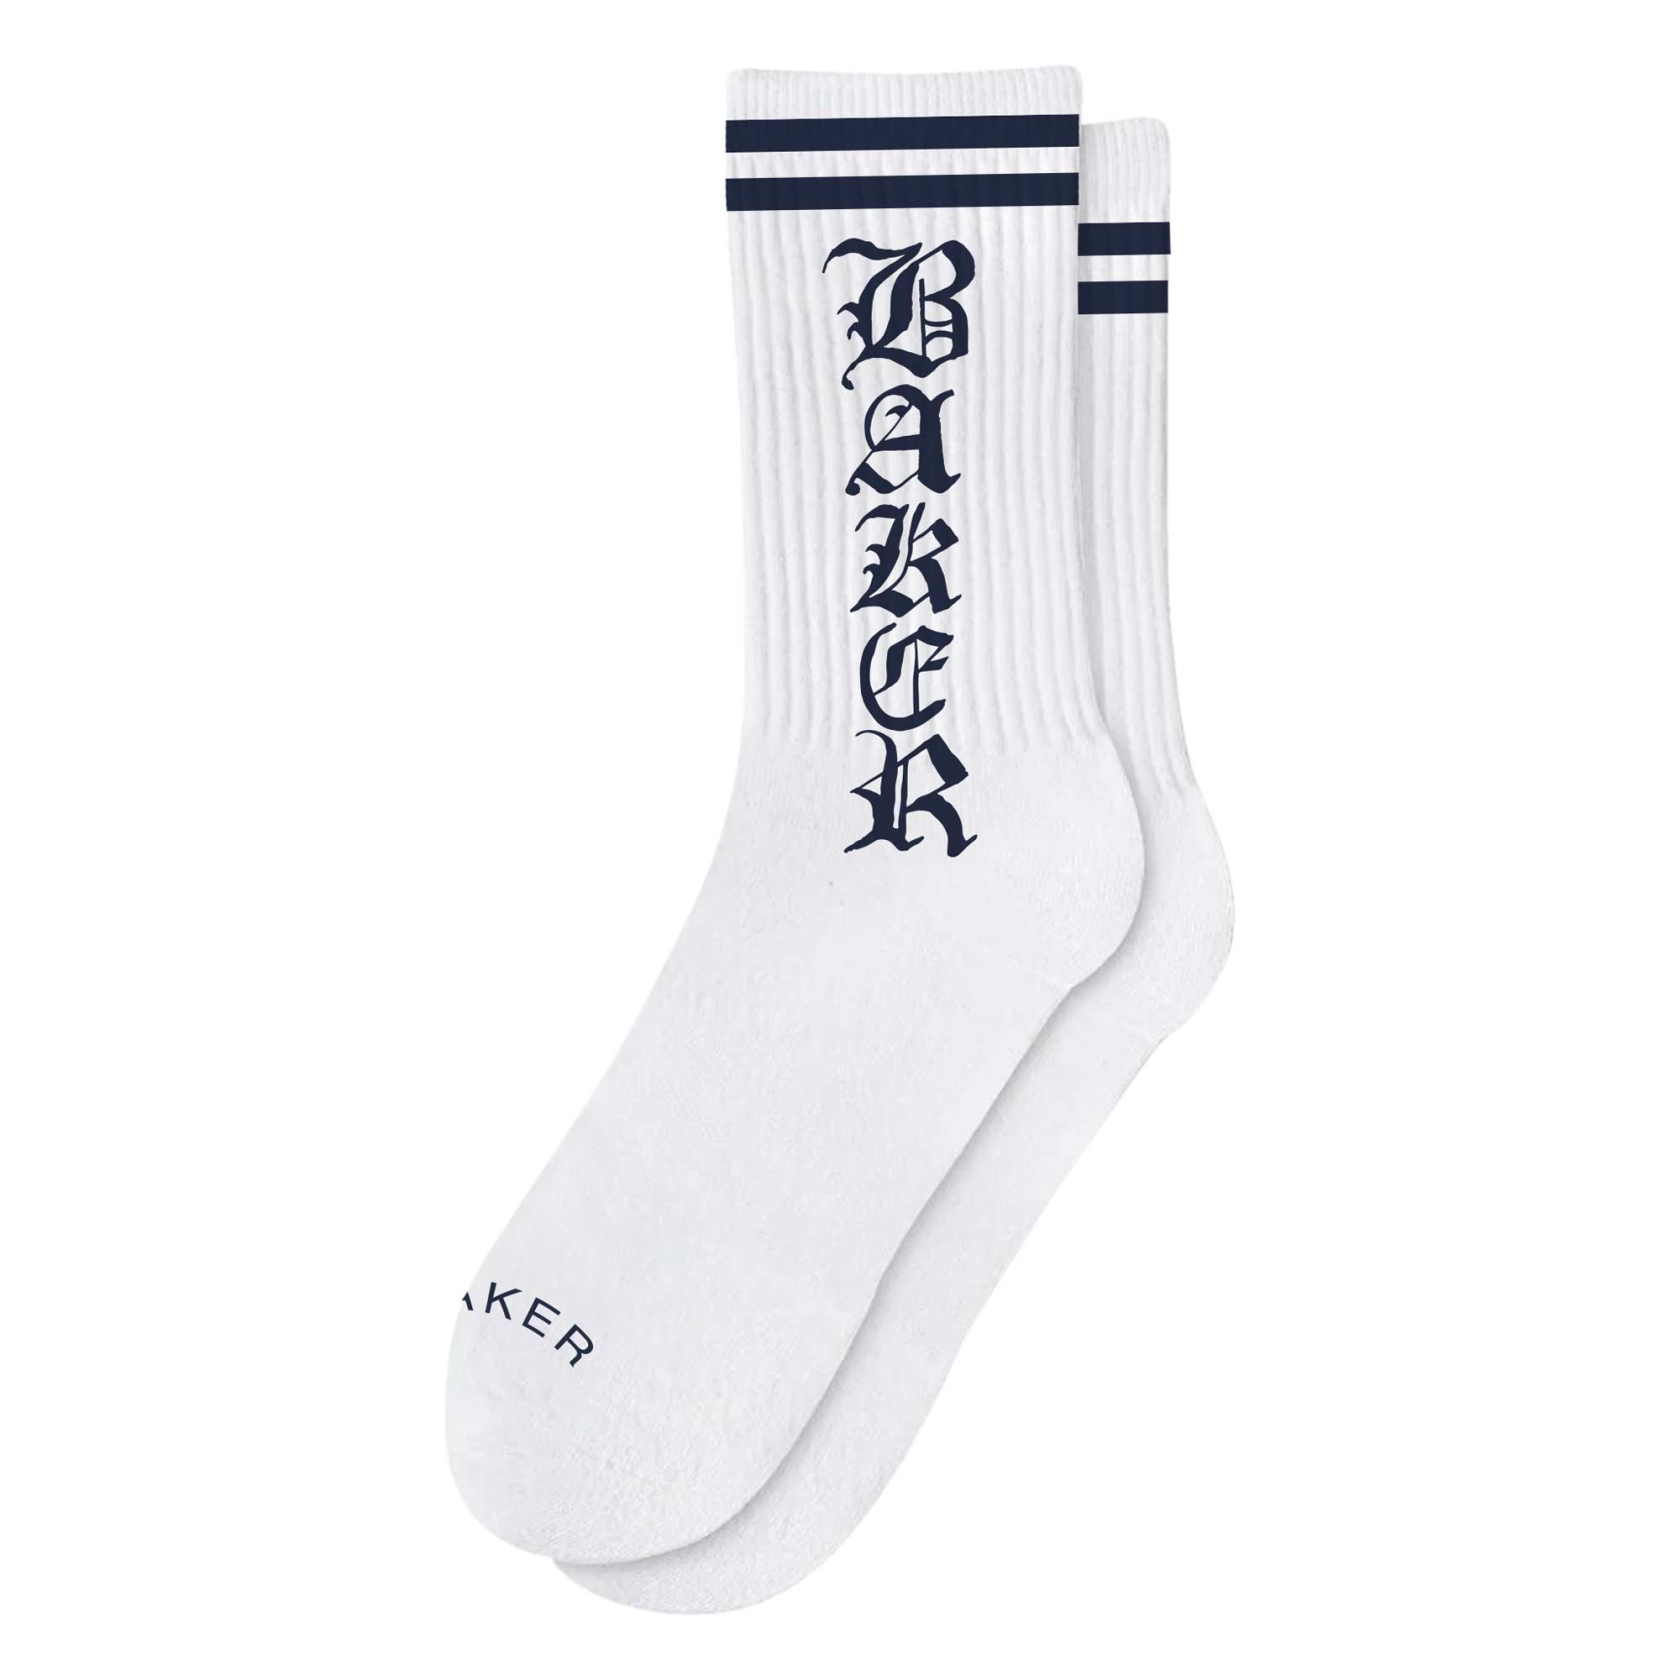 BAKER Socks OLD E, white/navy